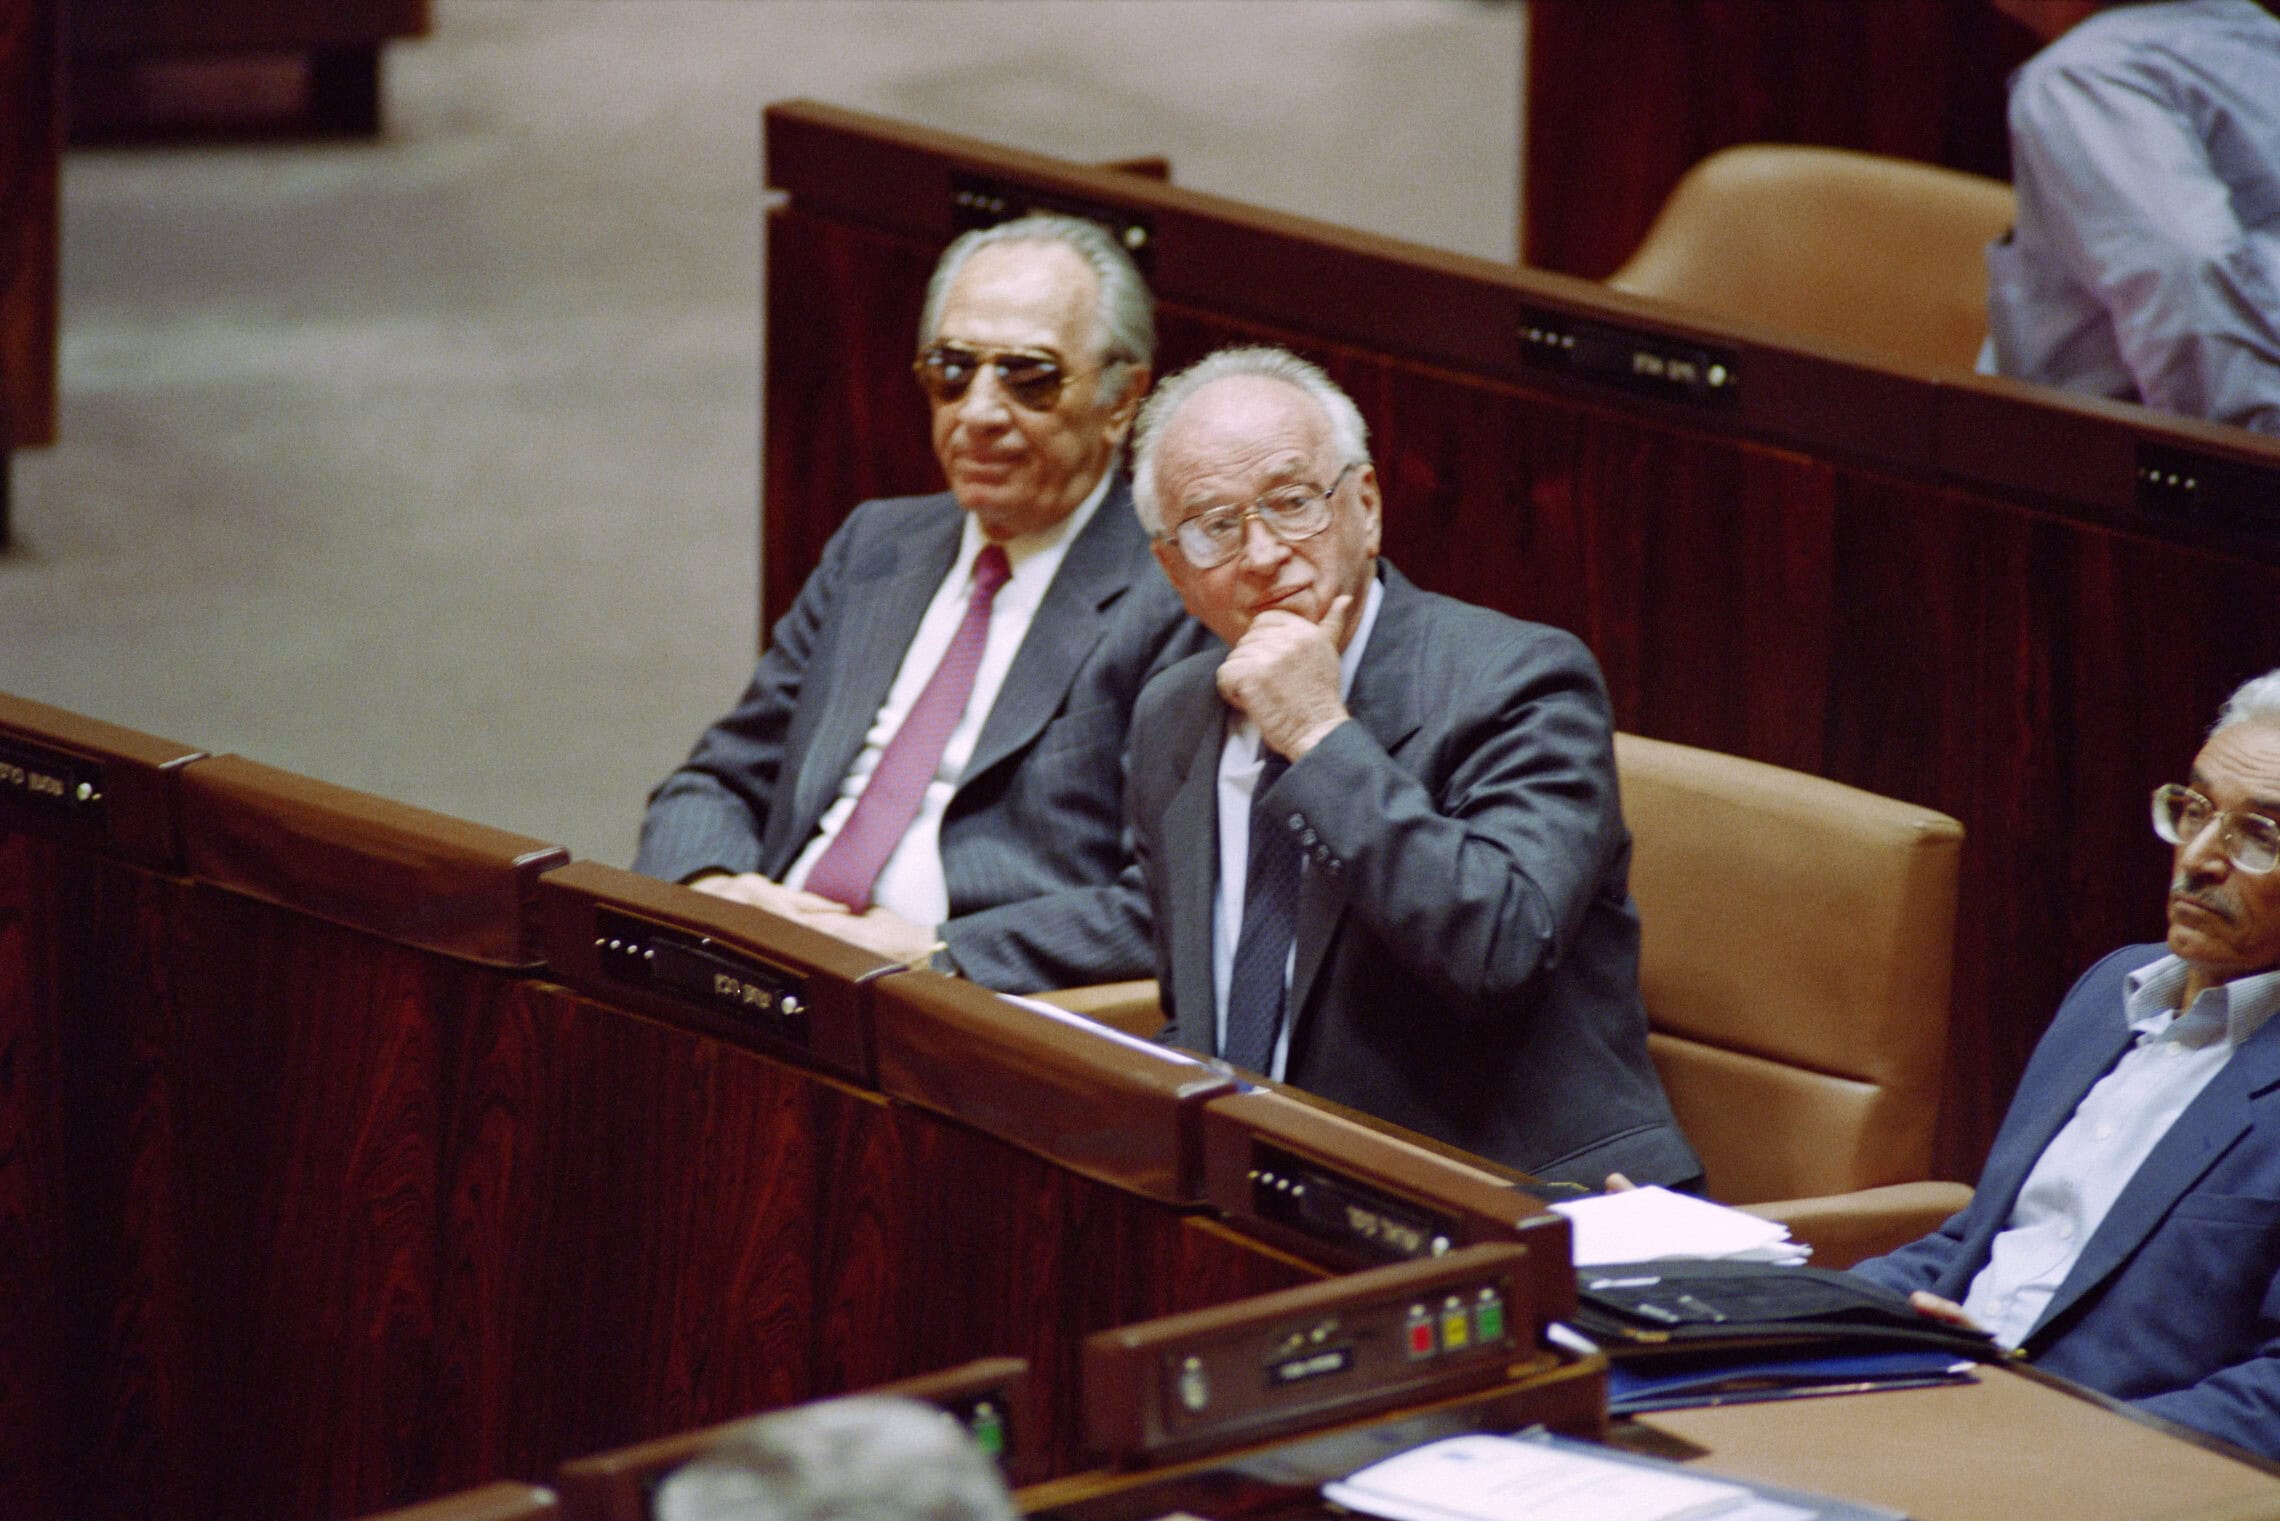 ראש הממשלה יצחק רבין ושר החוץ שמעון פרס בכנסת, 28 בפברואר 1994 (צילום: Menahem KAHANA / AFP)